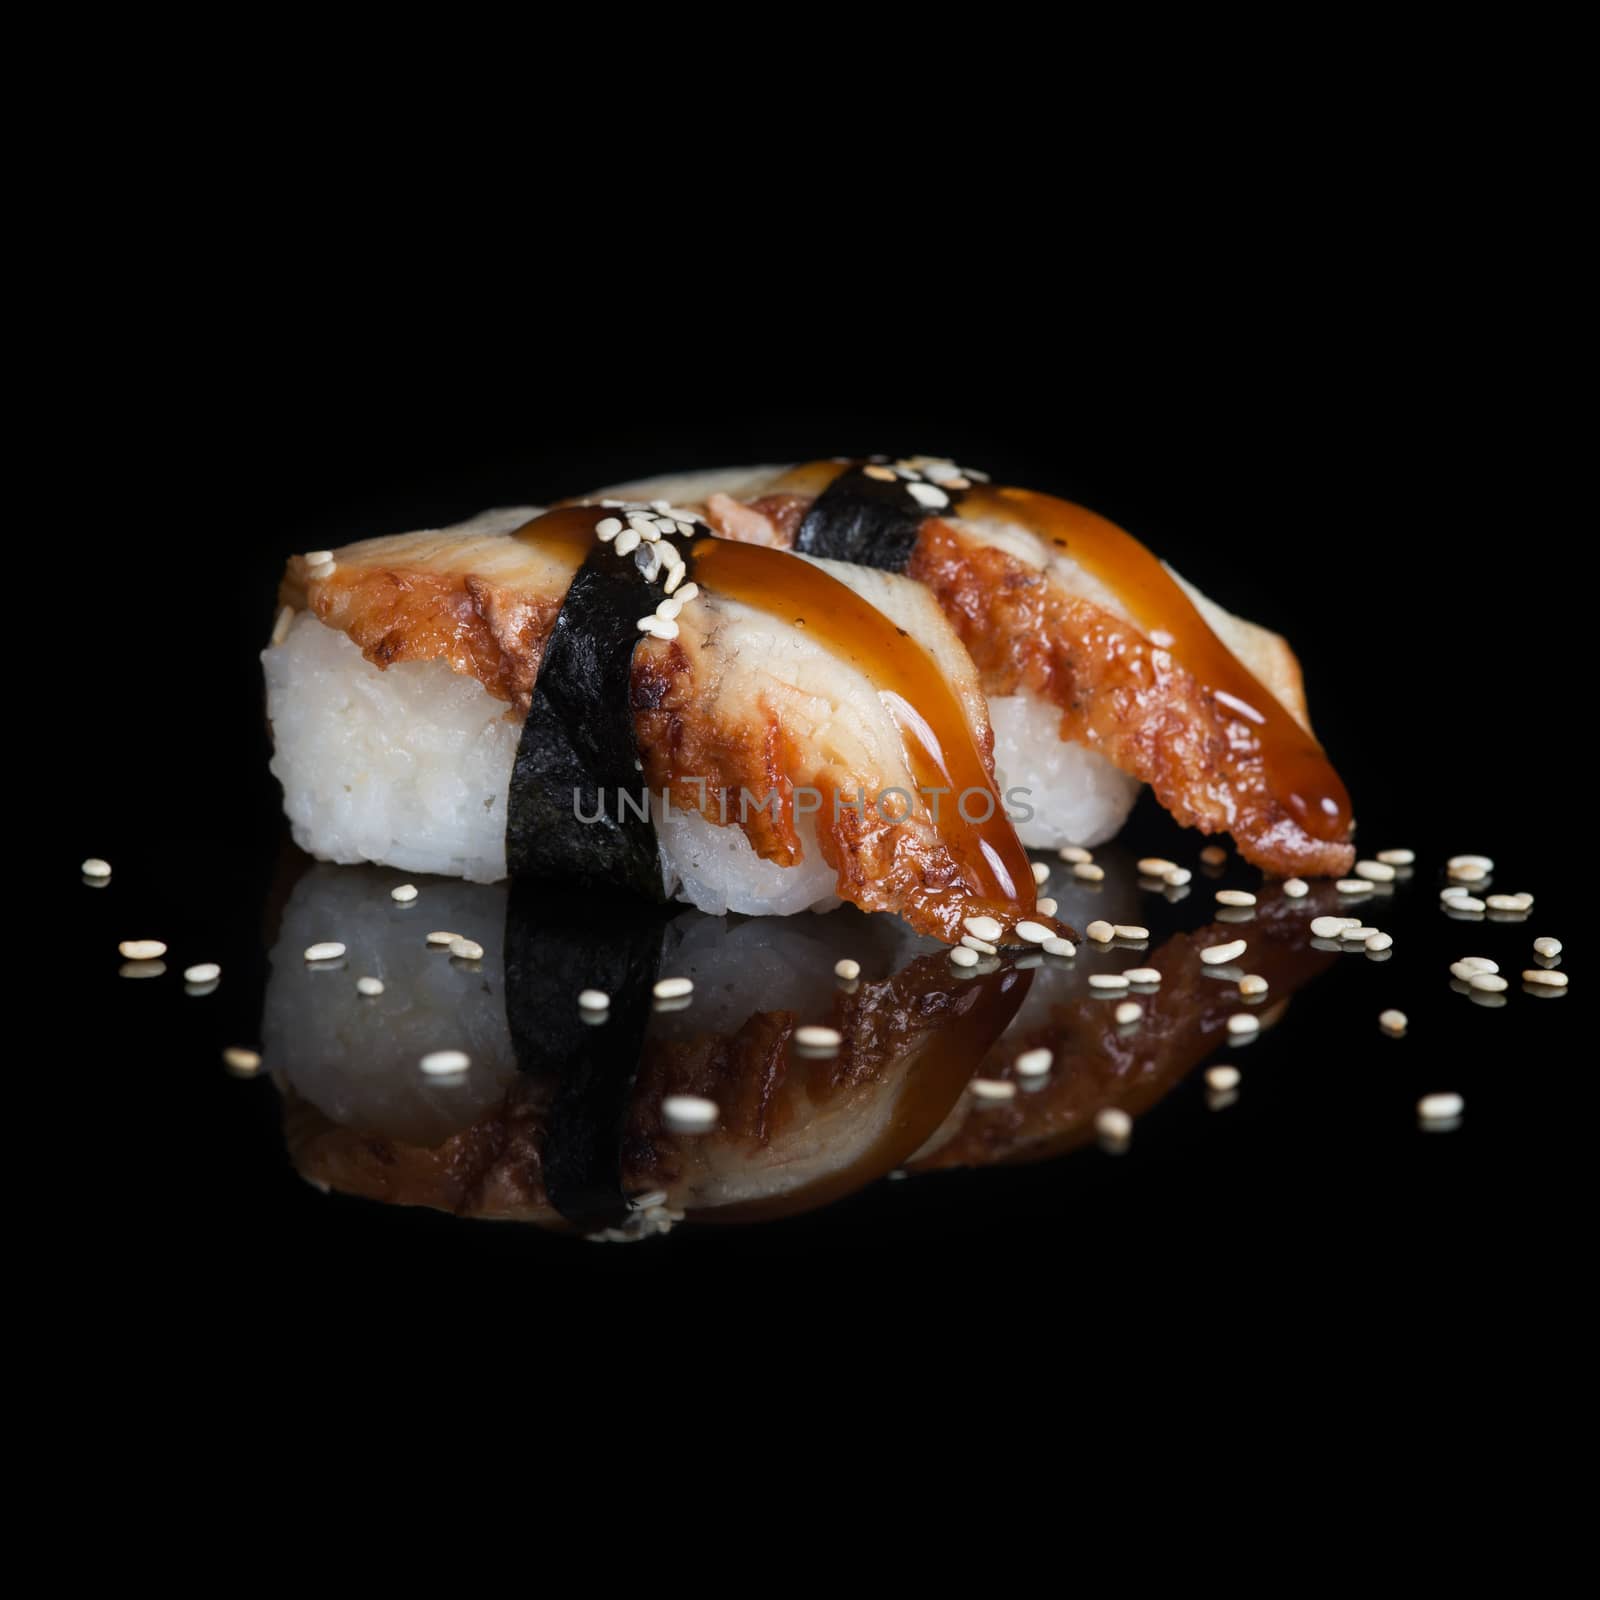 Eel sushi on black background